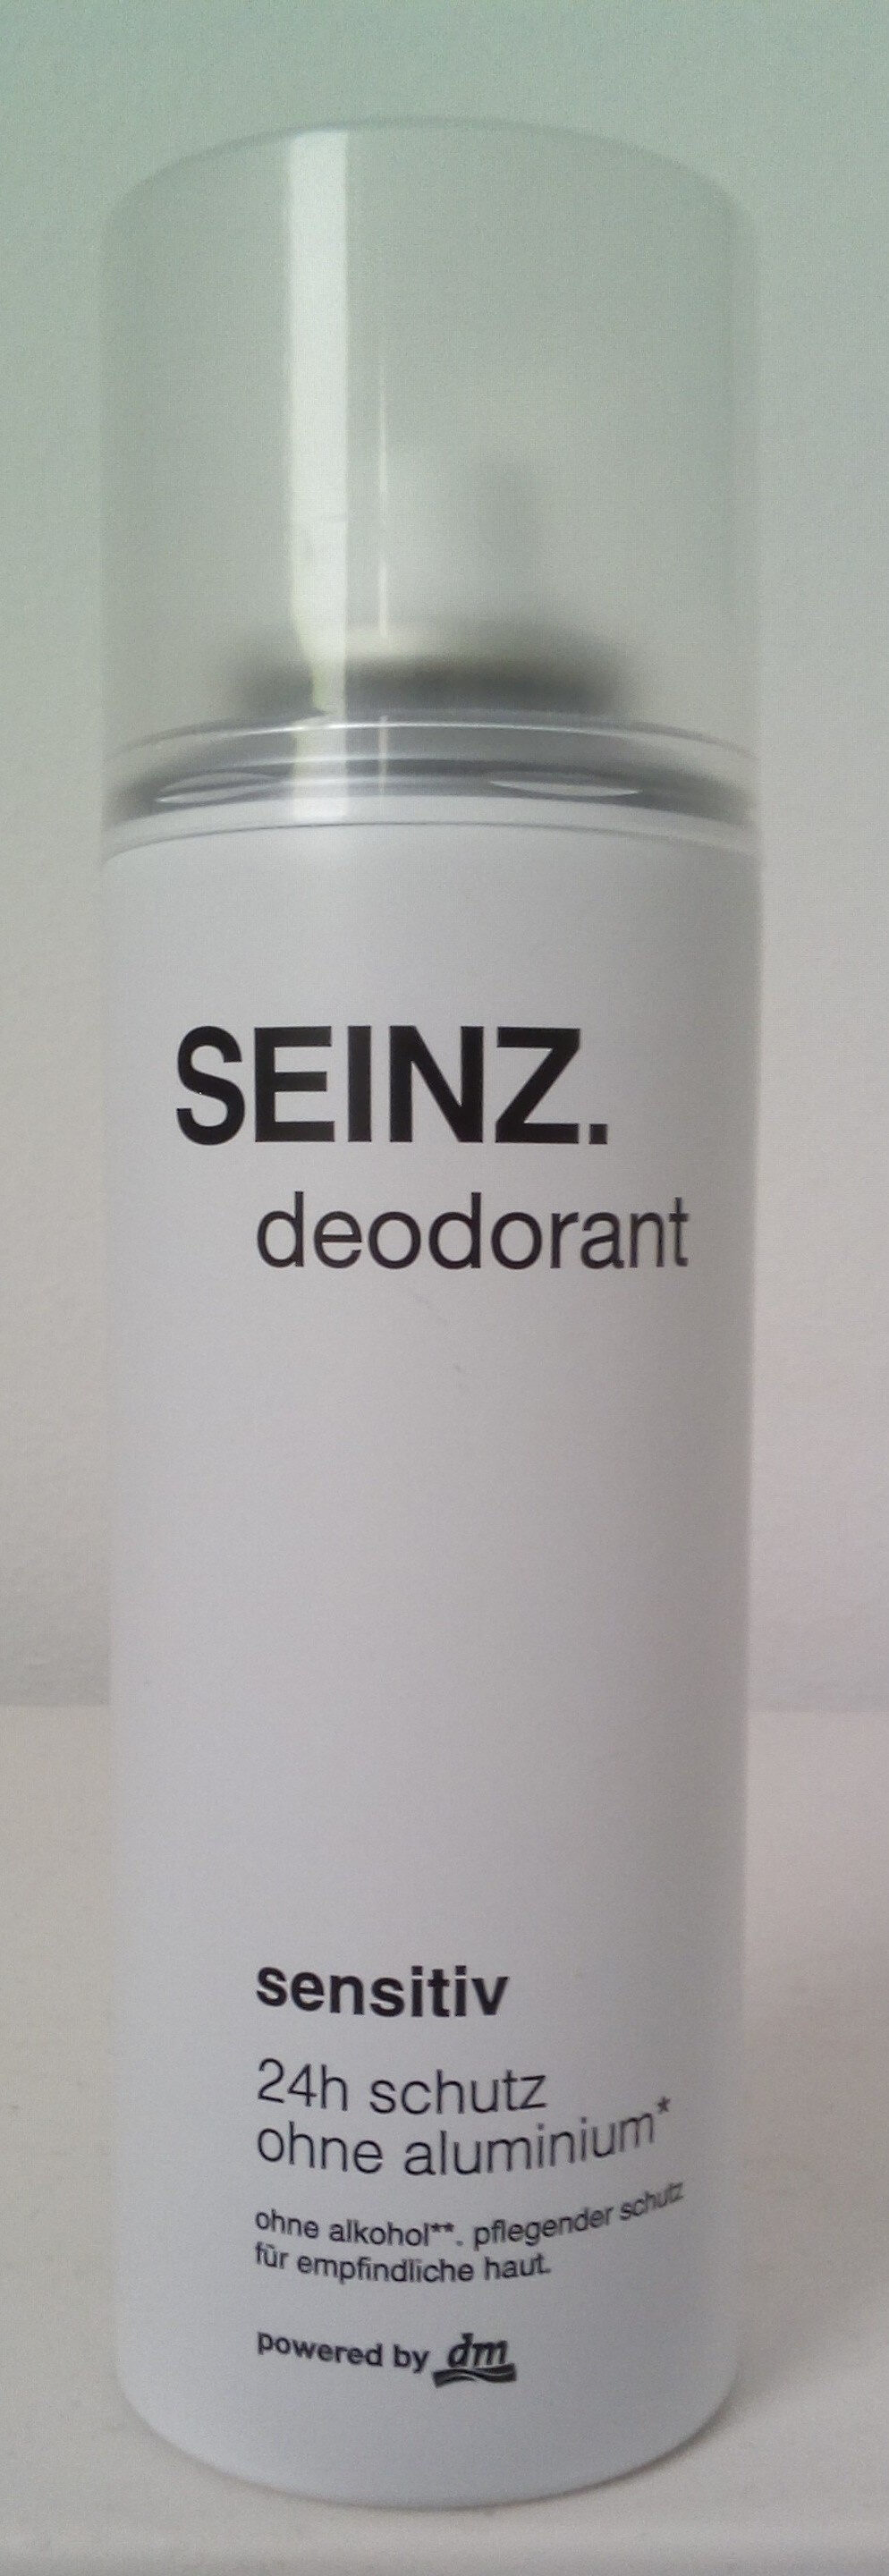 deodorant sensitiv - Product - de